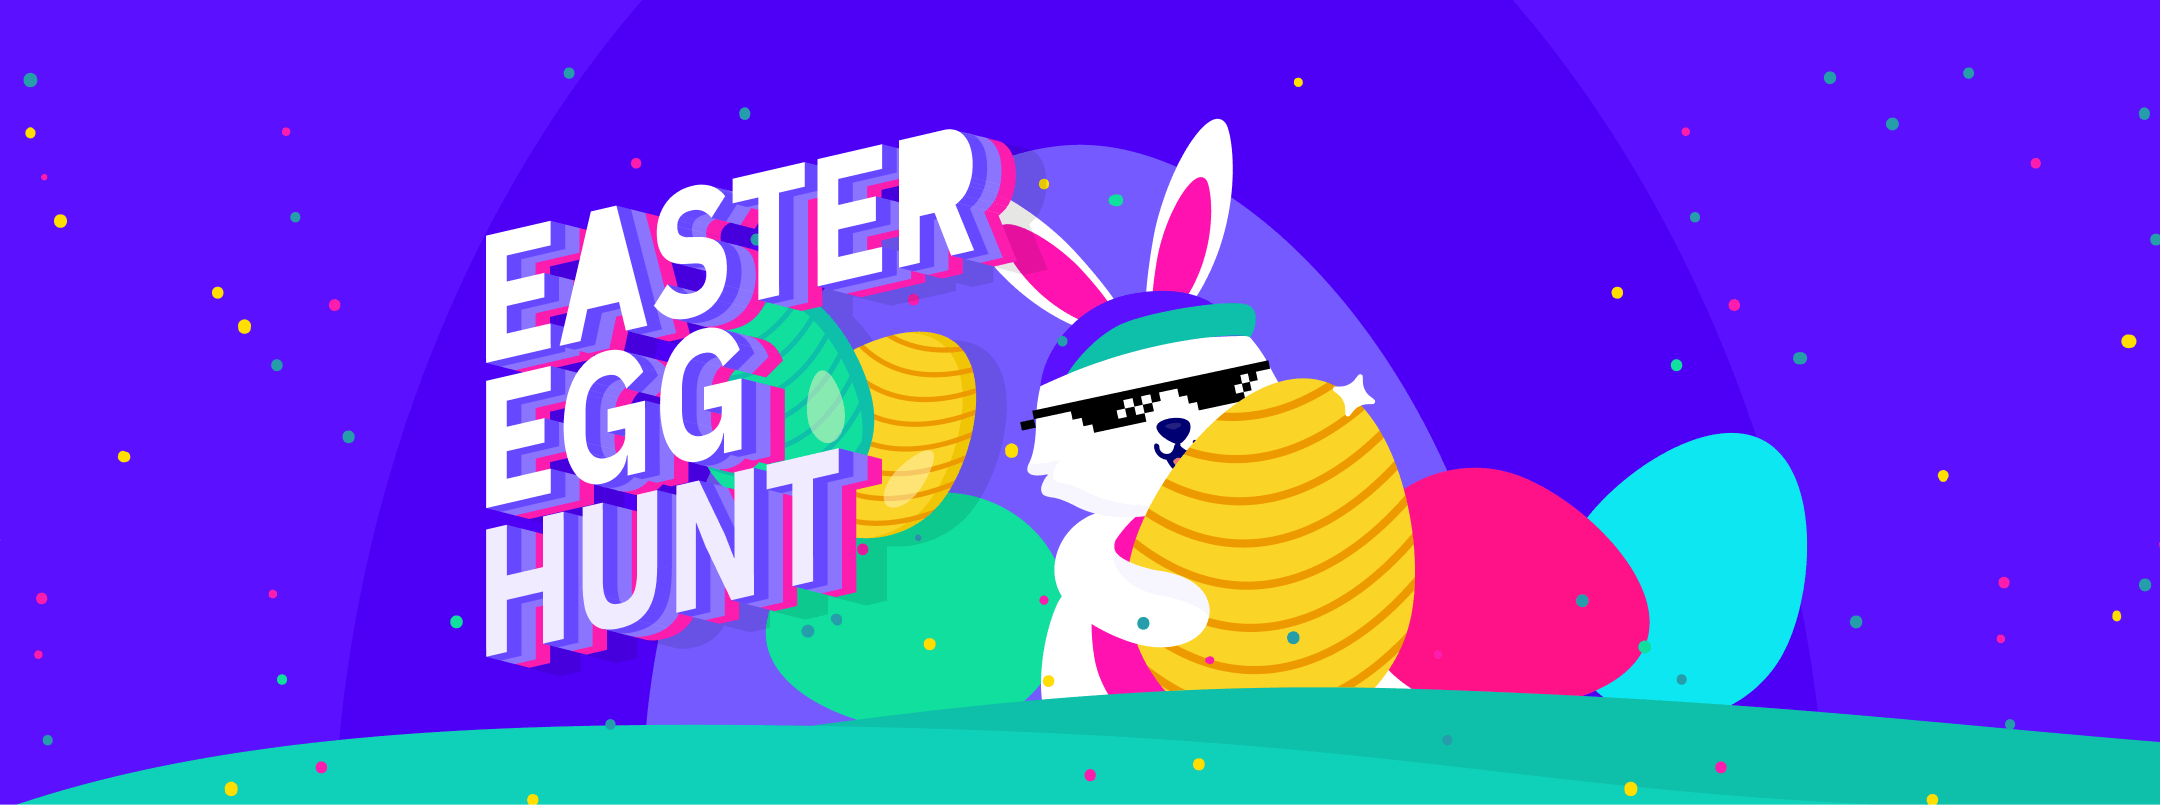 Join Cake DeFi’s Easter Egg Hunt
to Unlock Bonuses!